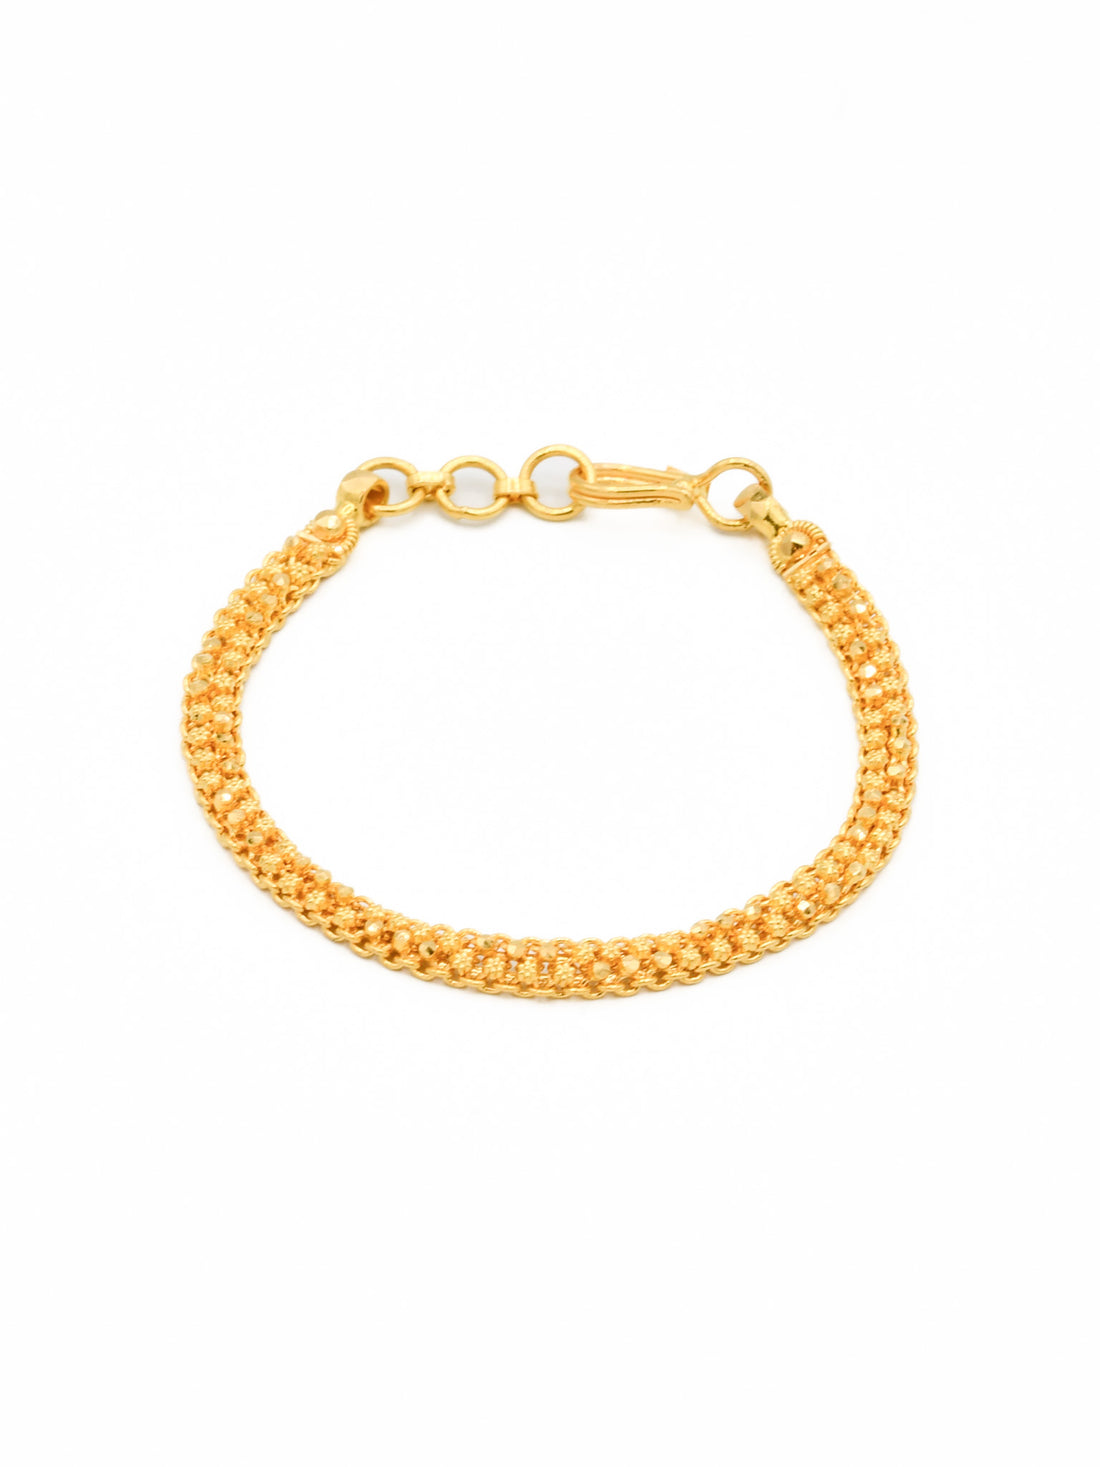 22ct Gold 1 PC Baby Bracelet - Roop Darshan